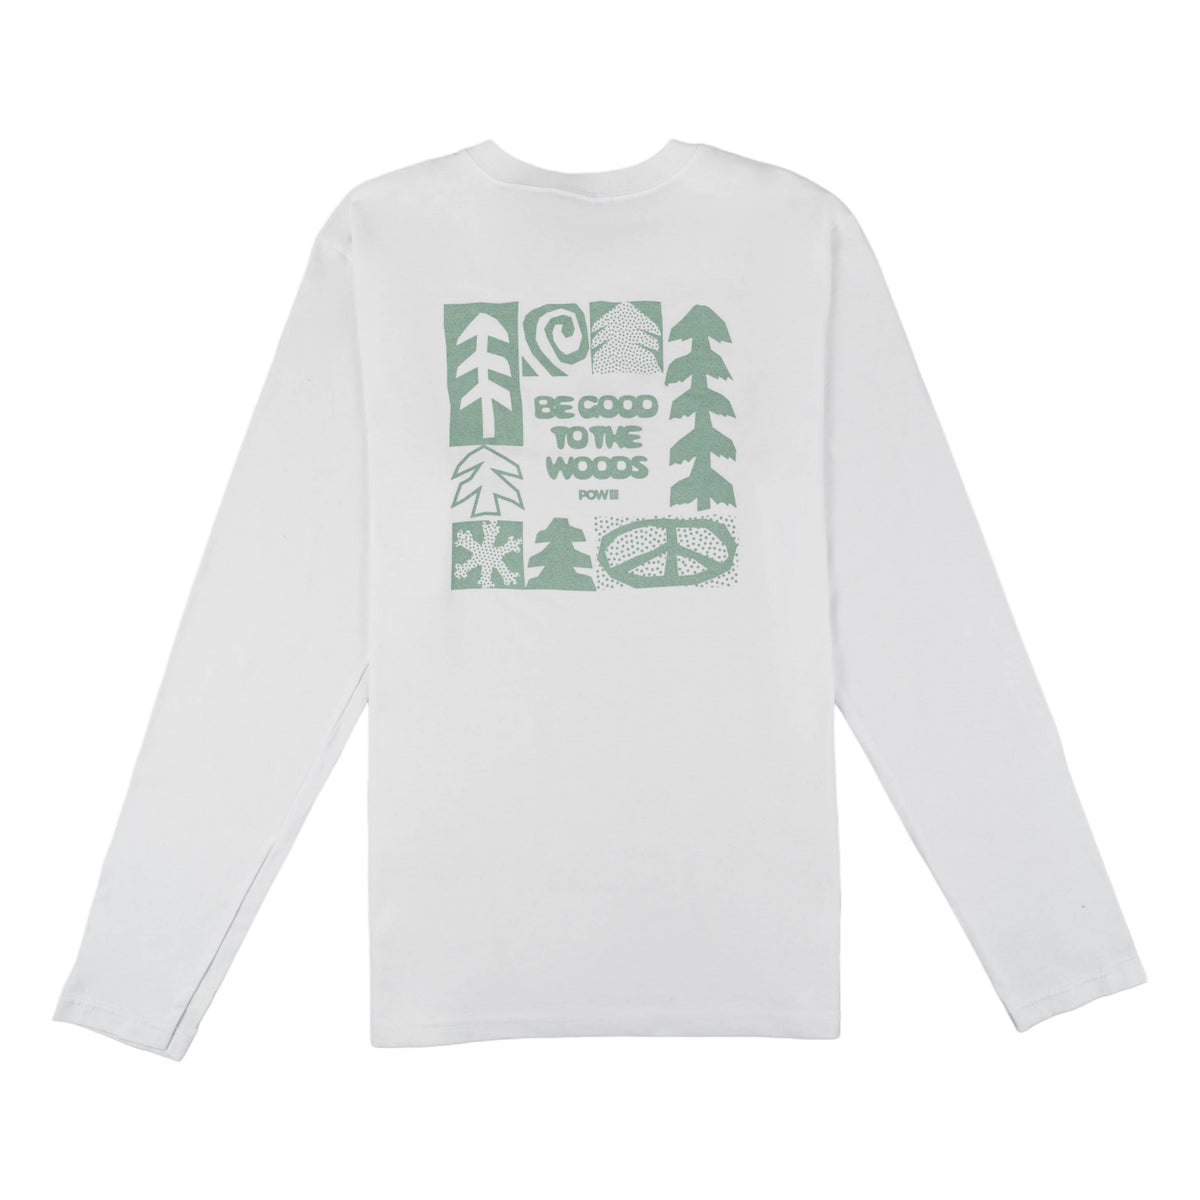 Good to the Woods Adult Sweatshirt